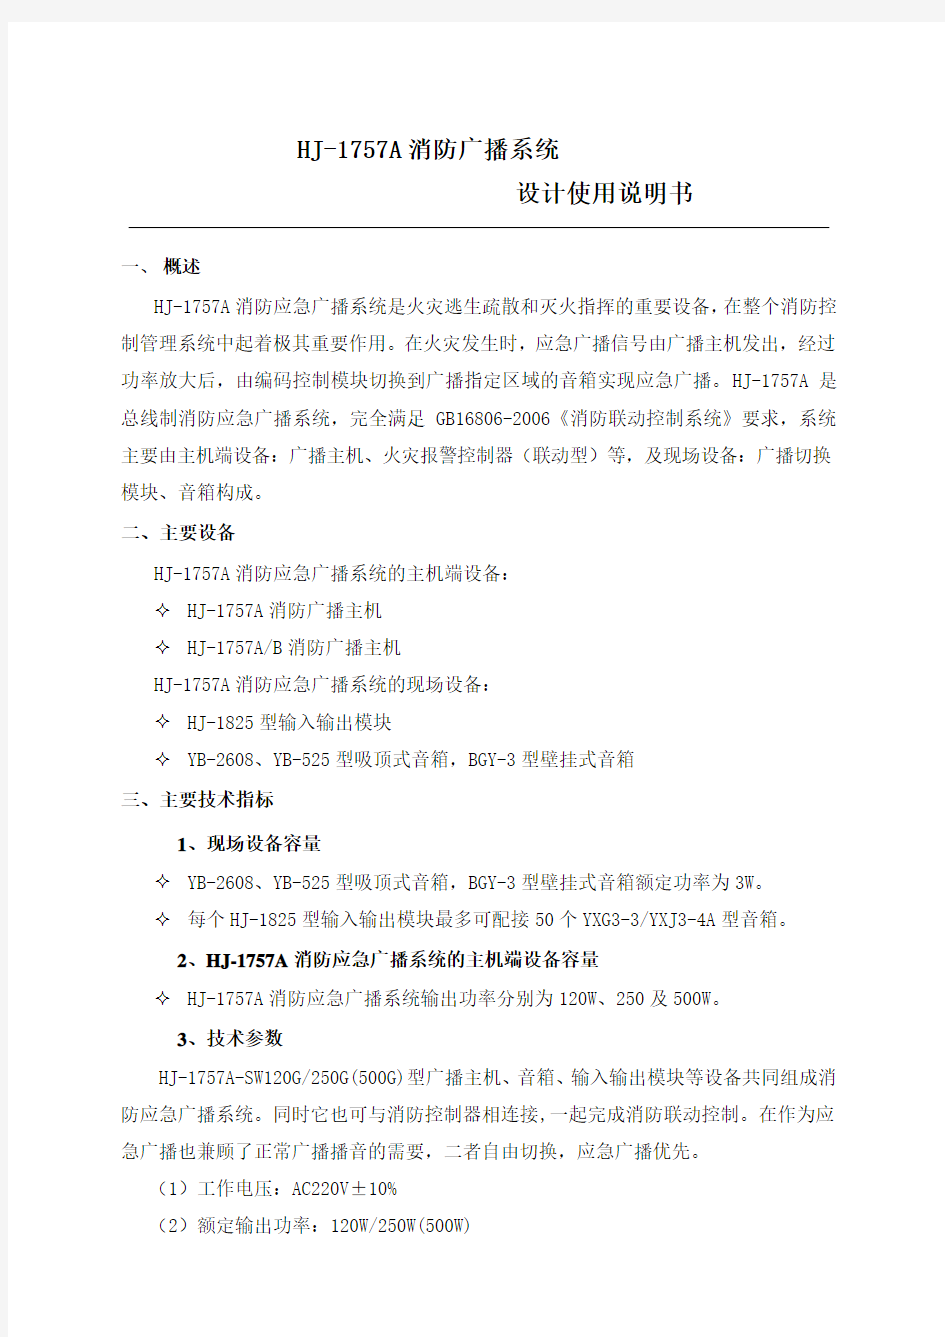 上海松江HJ-1757A消防广播系统操作说明书